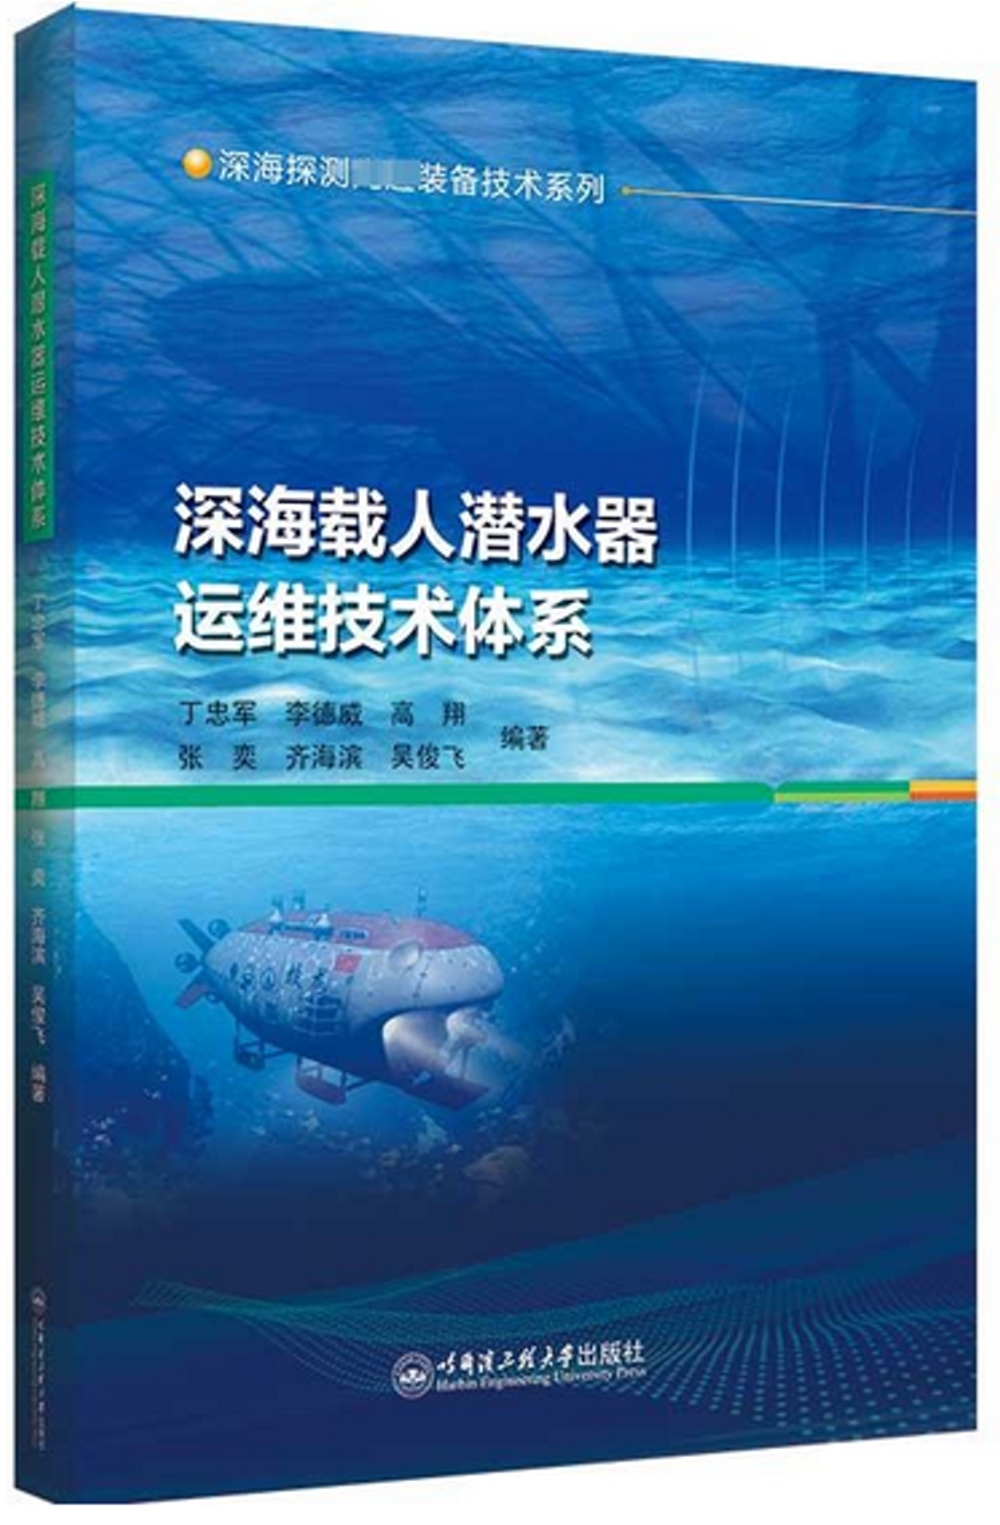 深海載人潛水器運維技術體系